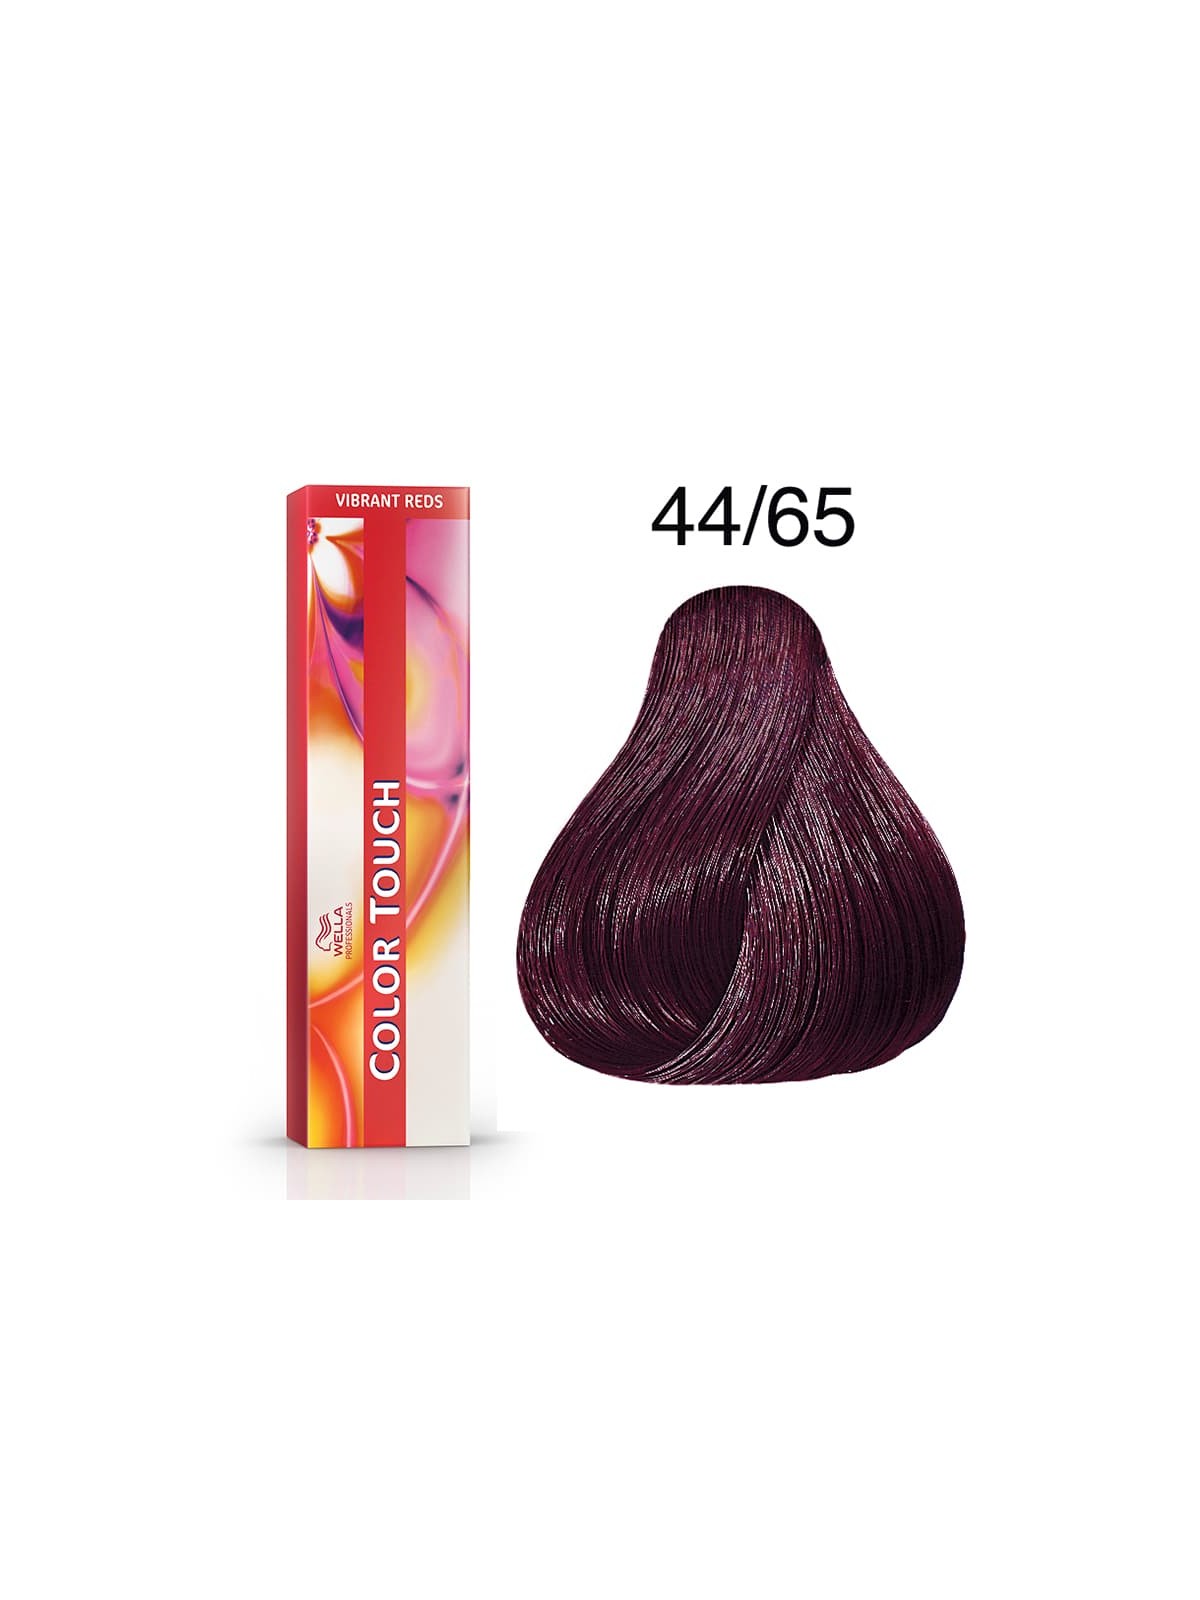 Tinte Wella Color Touch Vibrant Reds 44/65 Castaño Medio Intenso Violeta Caoba 60 ml.